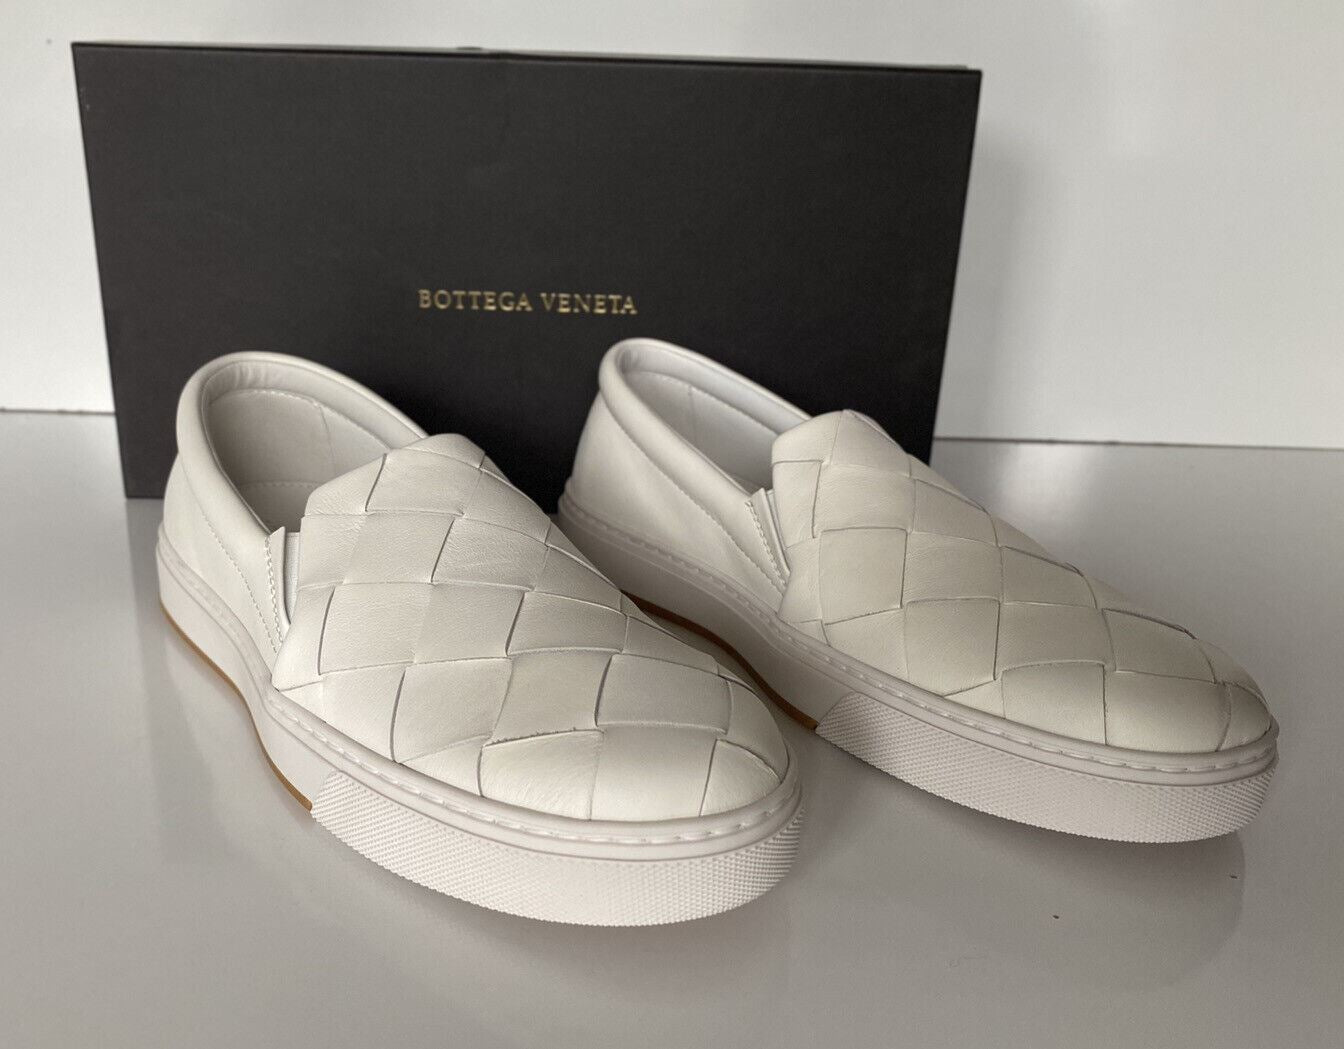 NIB 790 долларов США Bottega Veneta Белые туфли из телячьей кожи с резиновой подошвой и оптикой 8, США 608949 